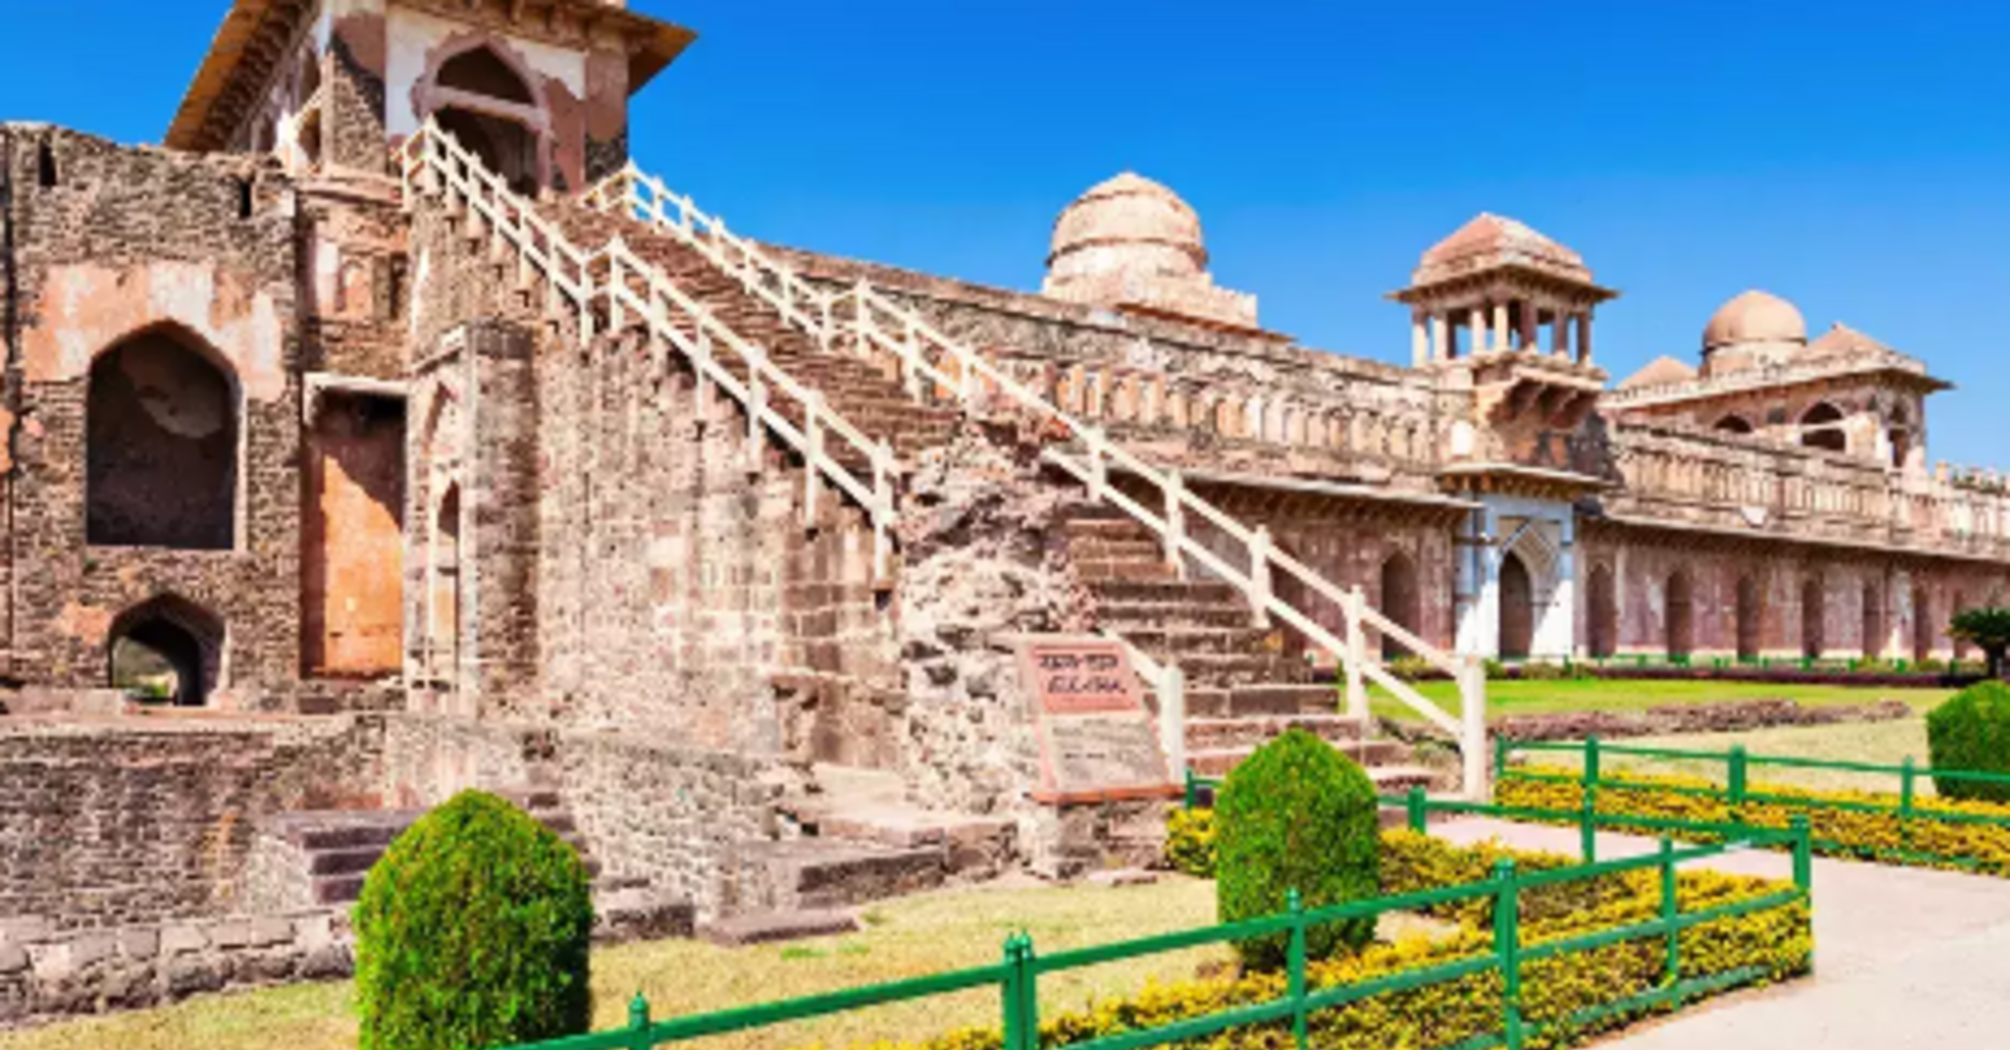 Mandu Fort in India